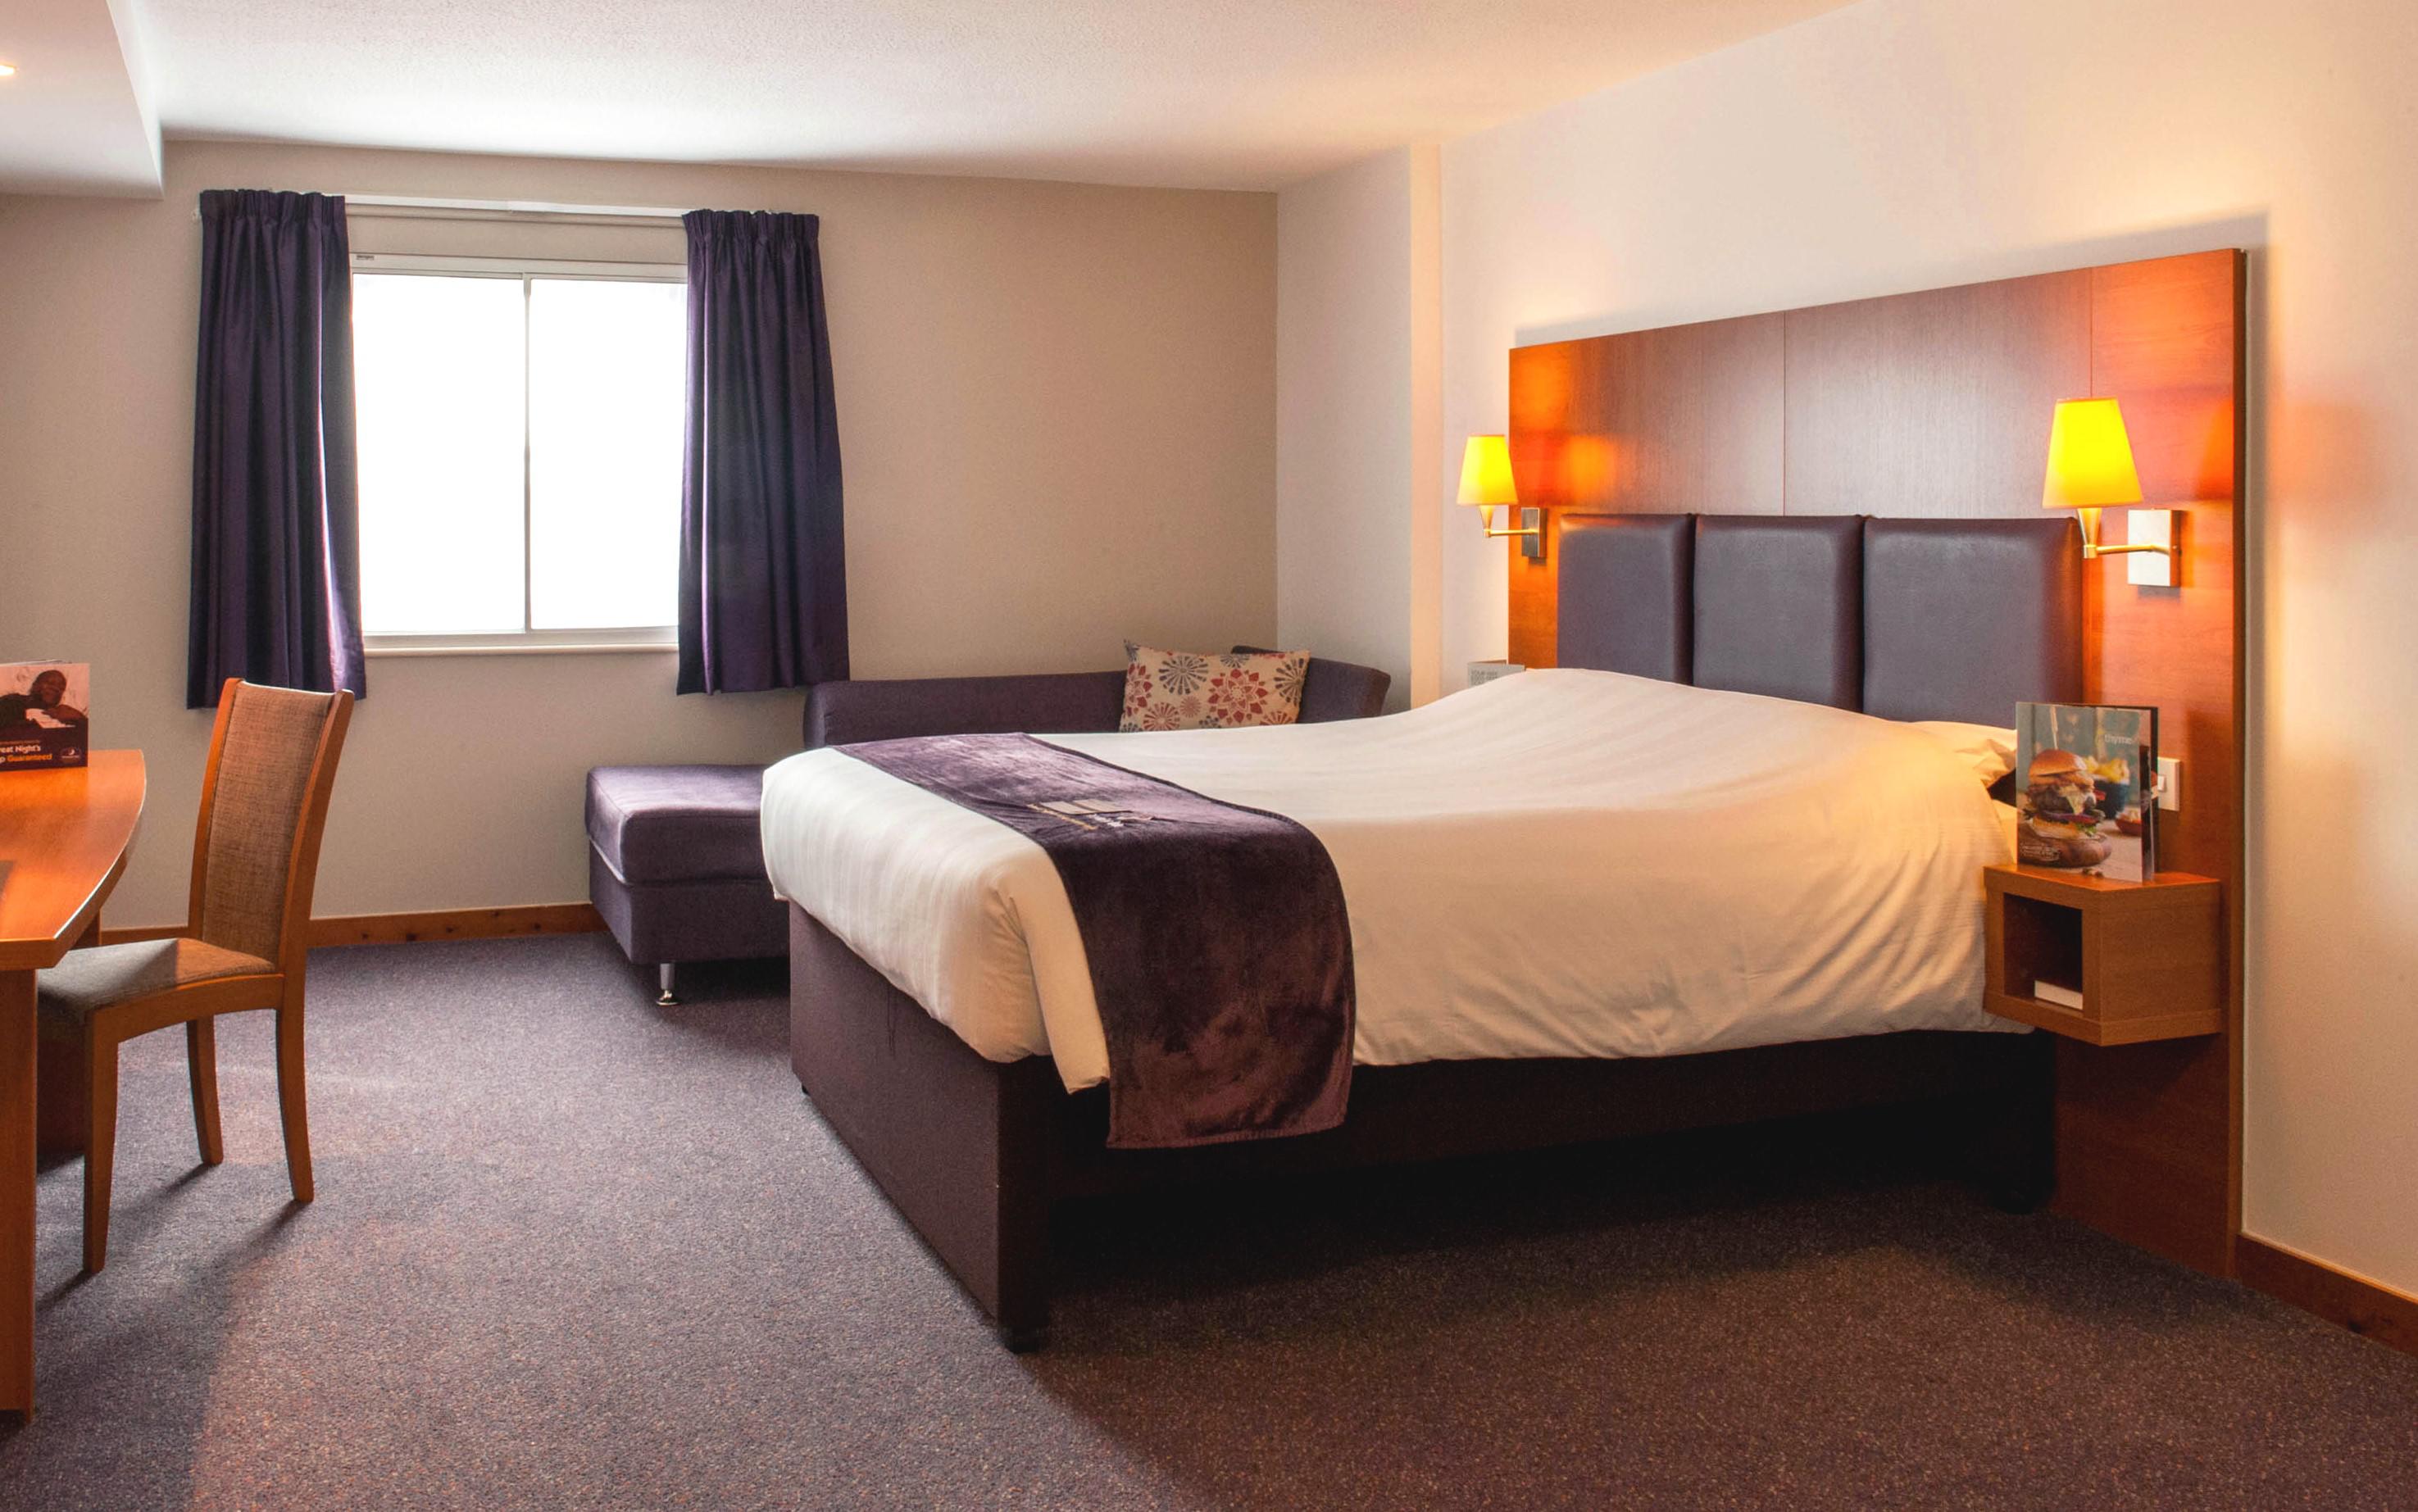 Premier Inn bedroom Premier Inn Gravesend (A2/Singlewell) hotel Gravesend 03330 031685